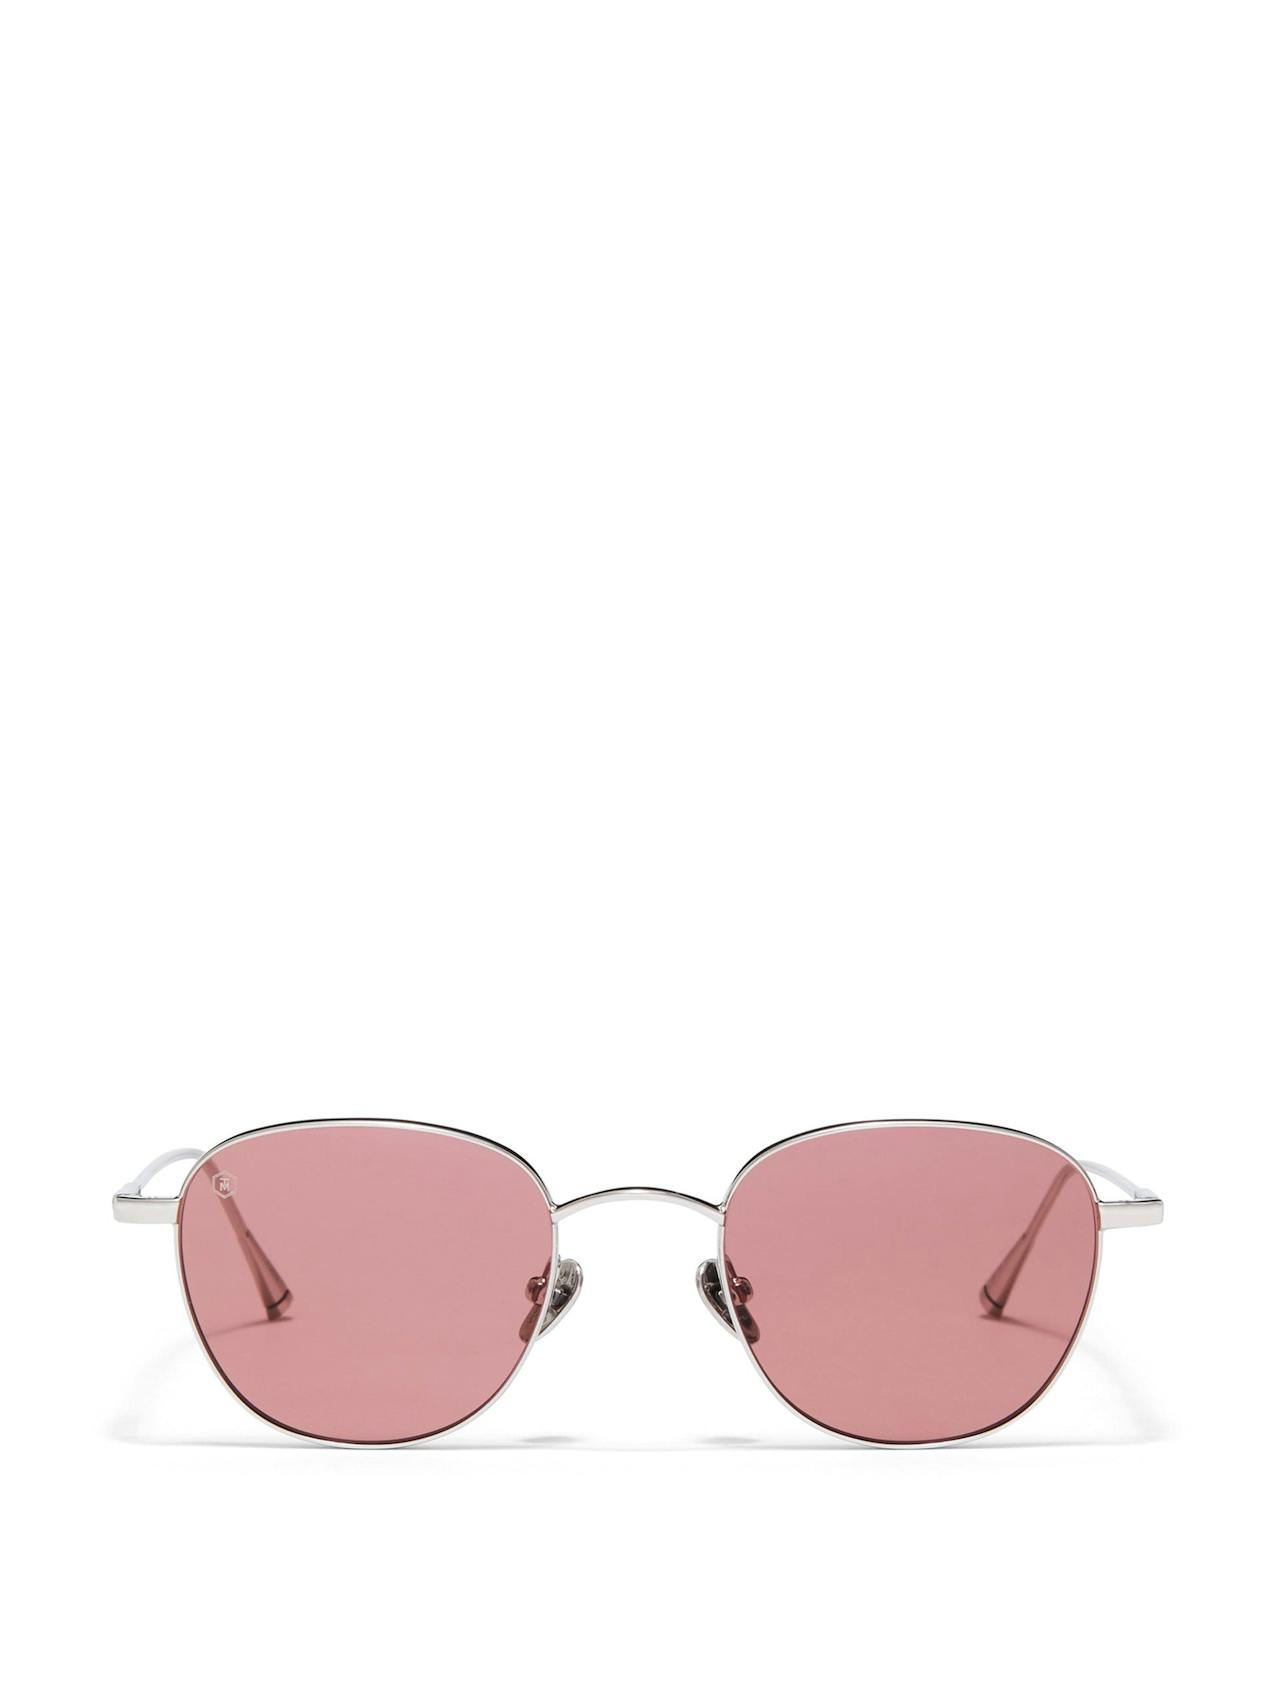 Durham sunglasses